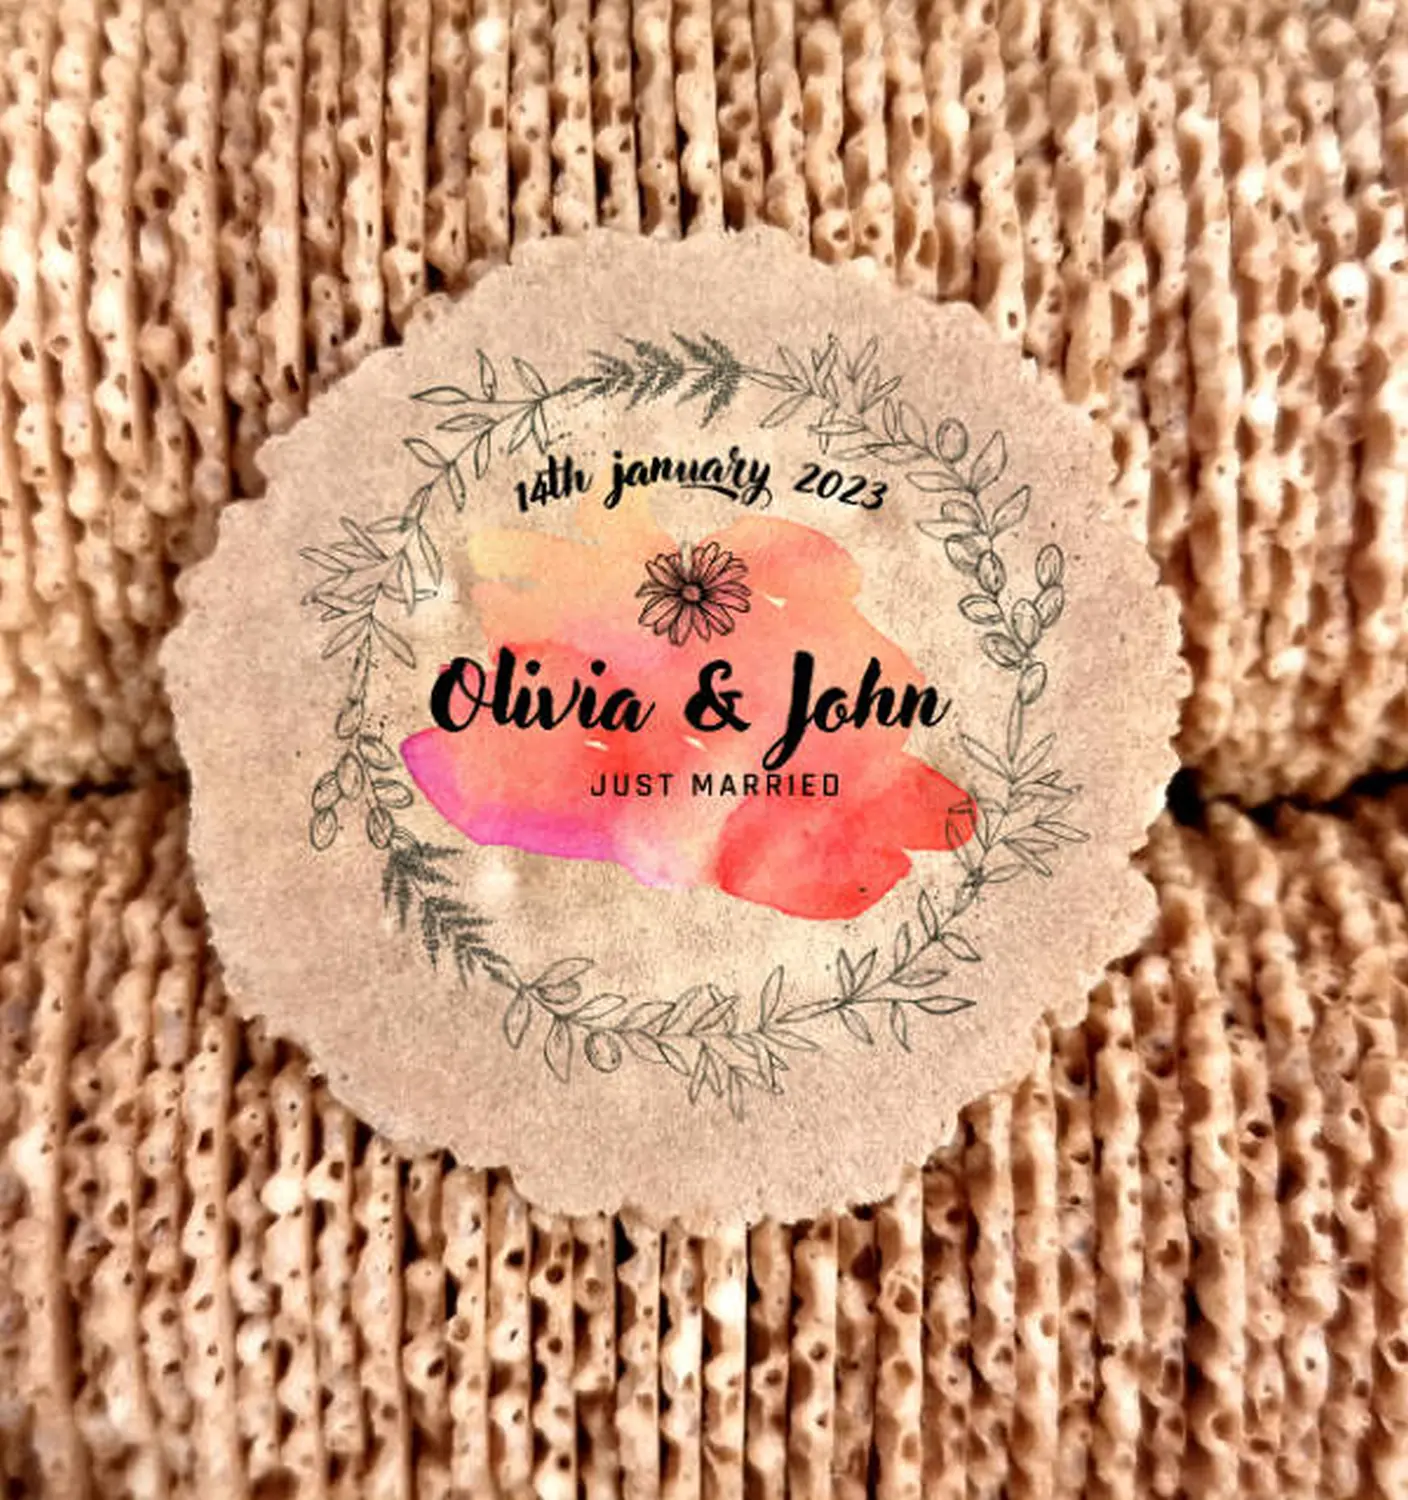 Olivia & john personalized Sevanetti wafers